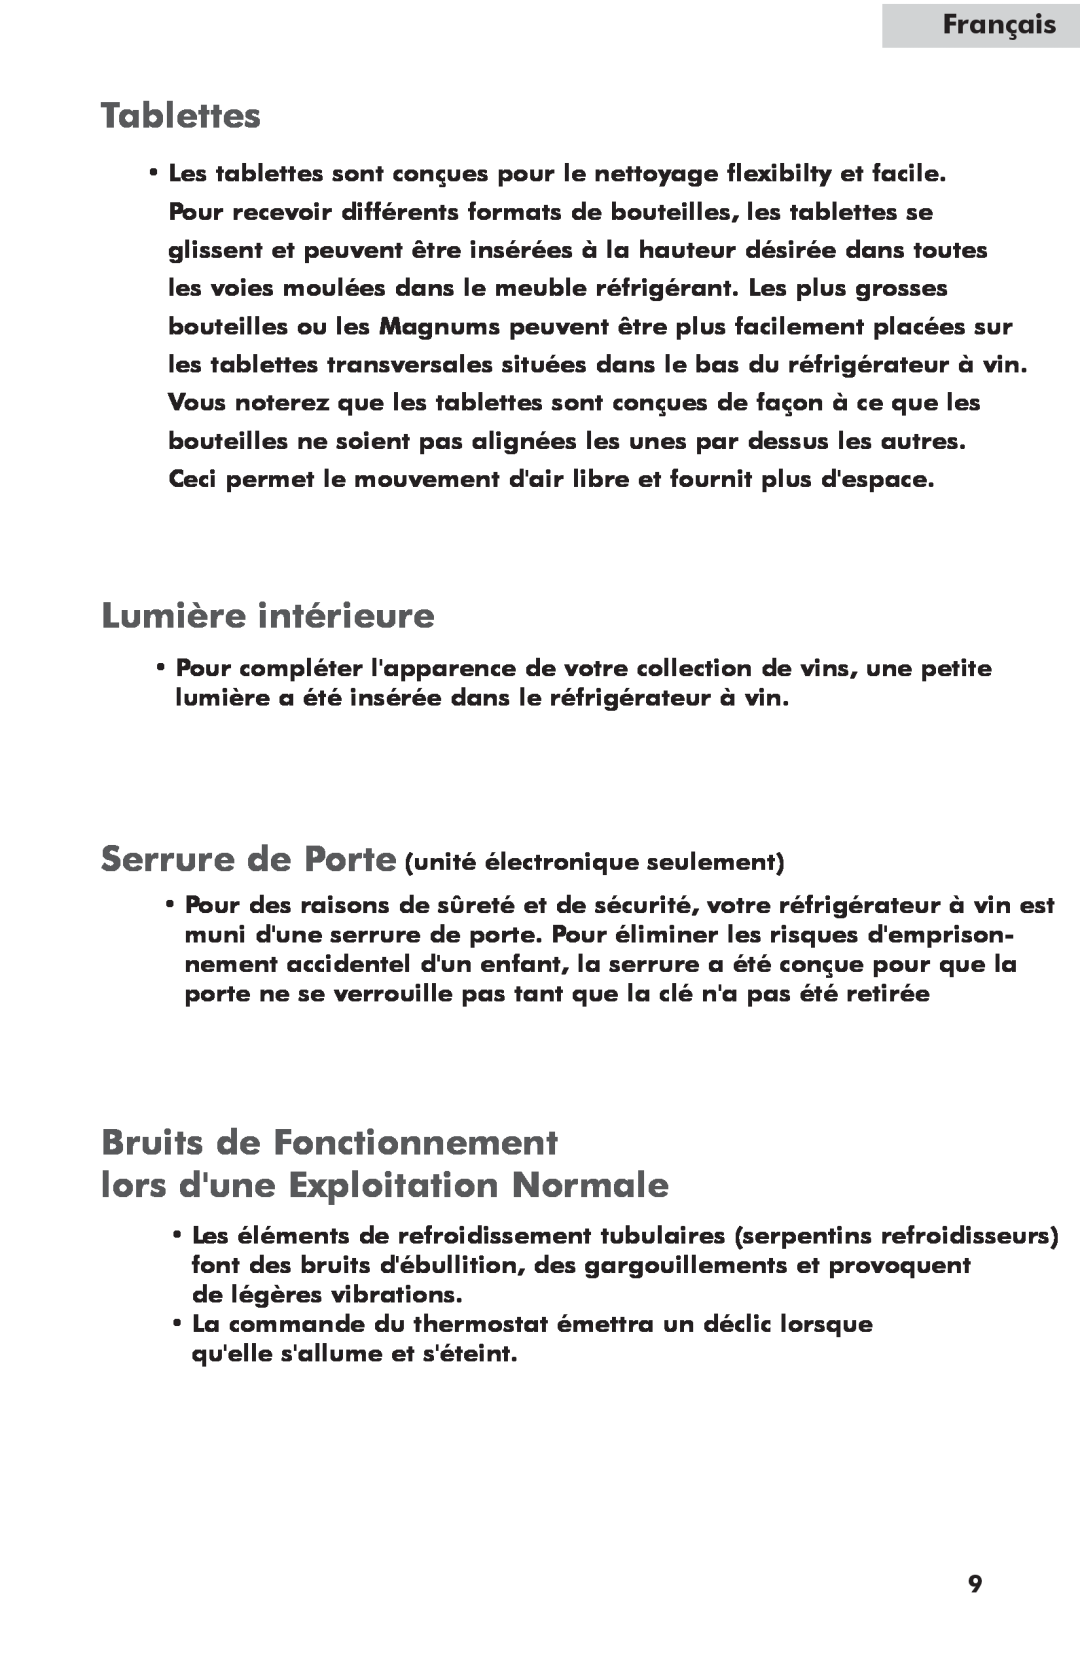 Haier HW42WF10NG Tablettes, Lumière intérieure, Bruits de Fonctionnement lors dune Exploitation Normale, Français 